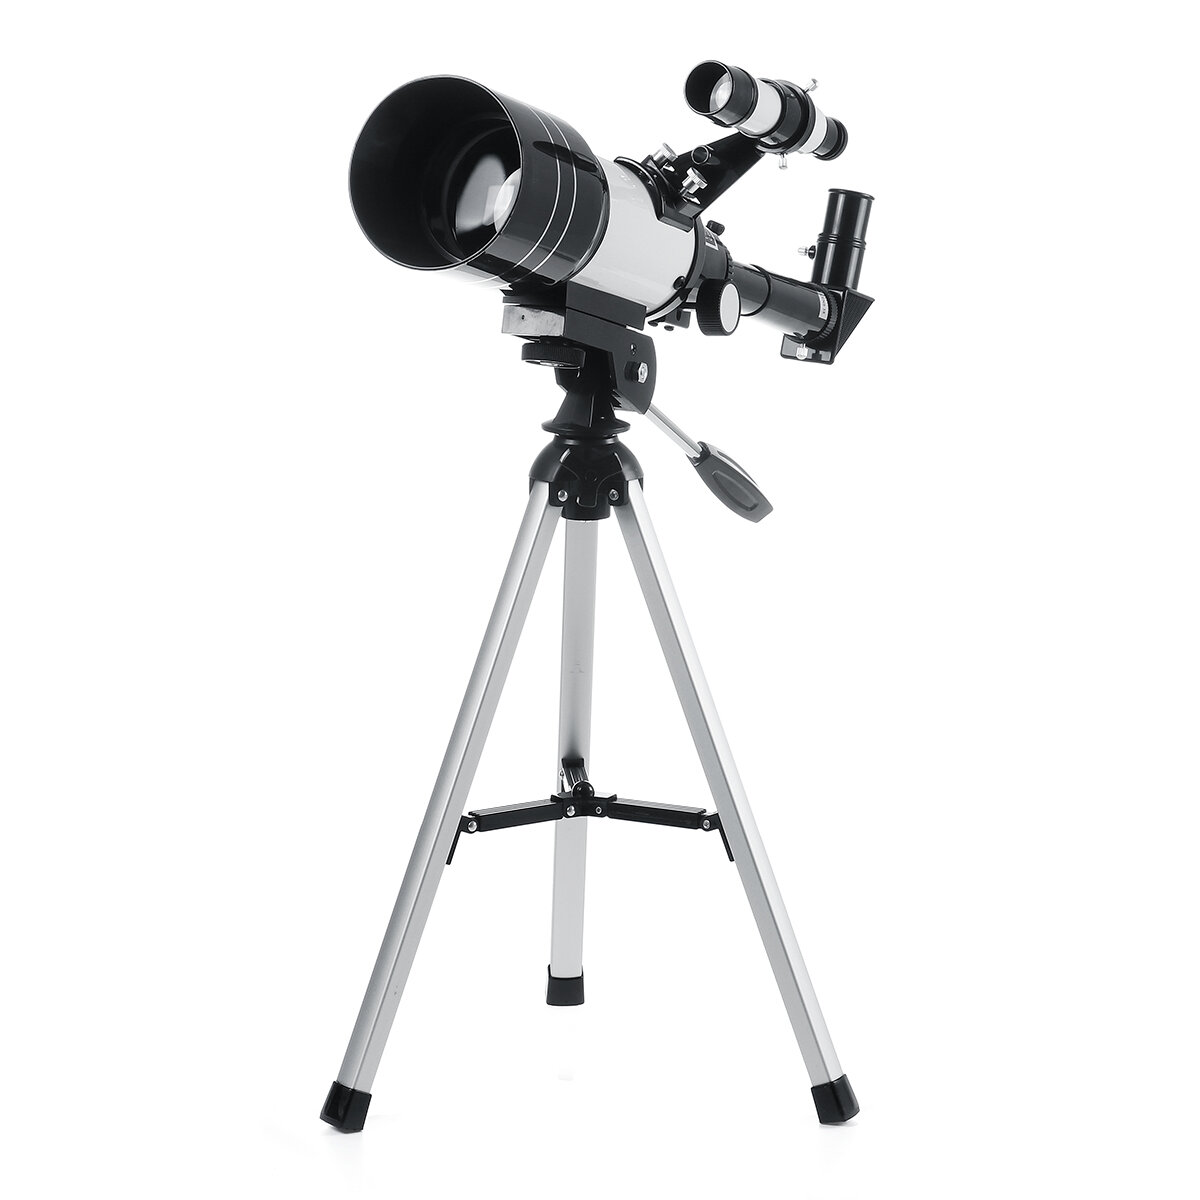 تلسكوب فلكي احترافي بقطر 150x70mm لمشاهدة الفضاء والقمر بجودة عالية. مثالي للاستخدام في الهواء الطلق والمنزل.